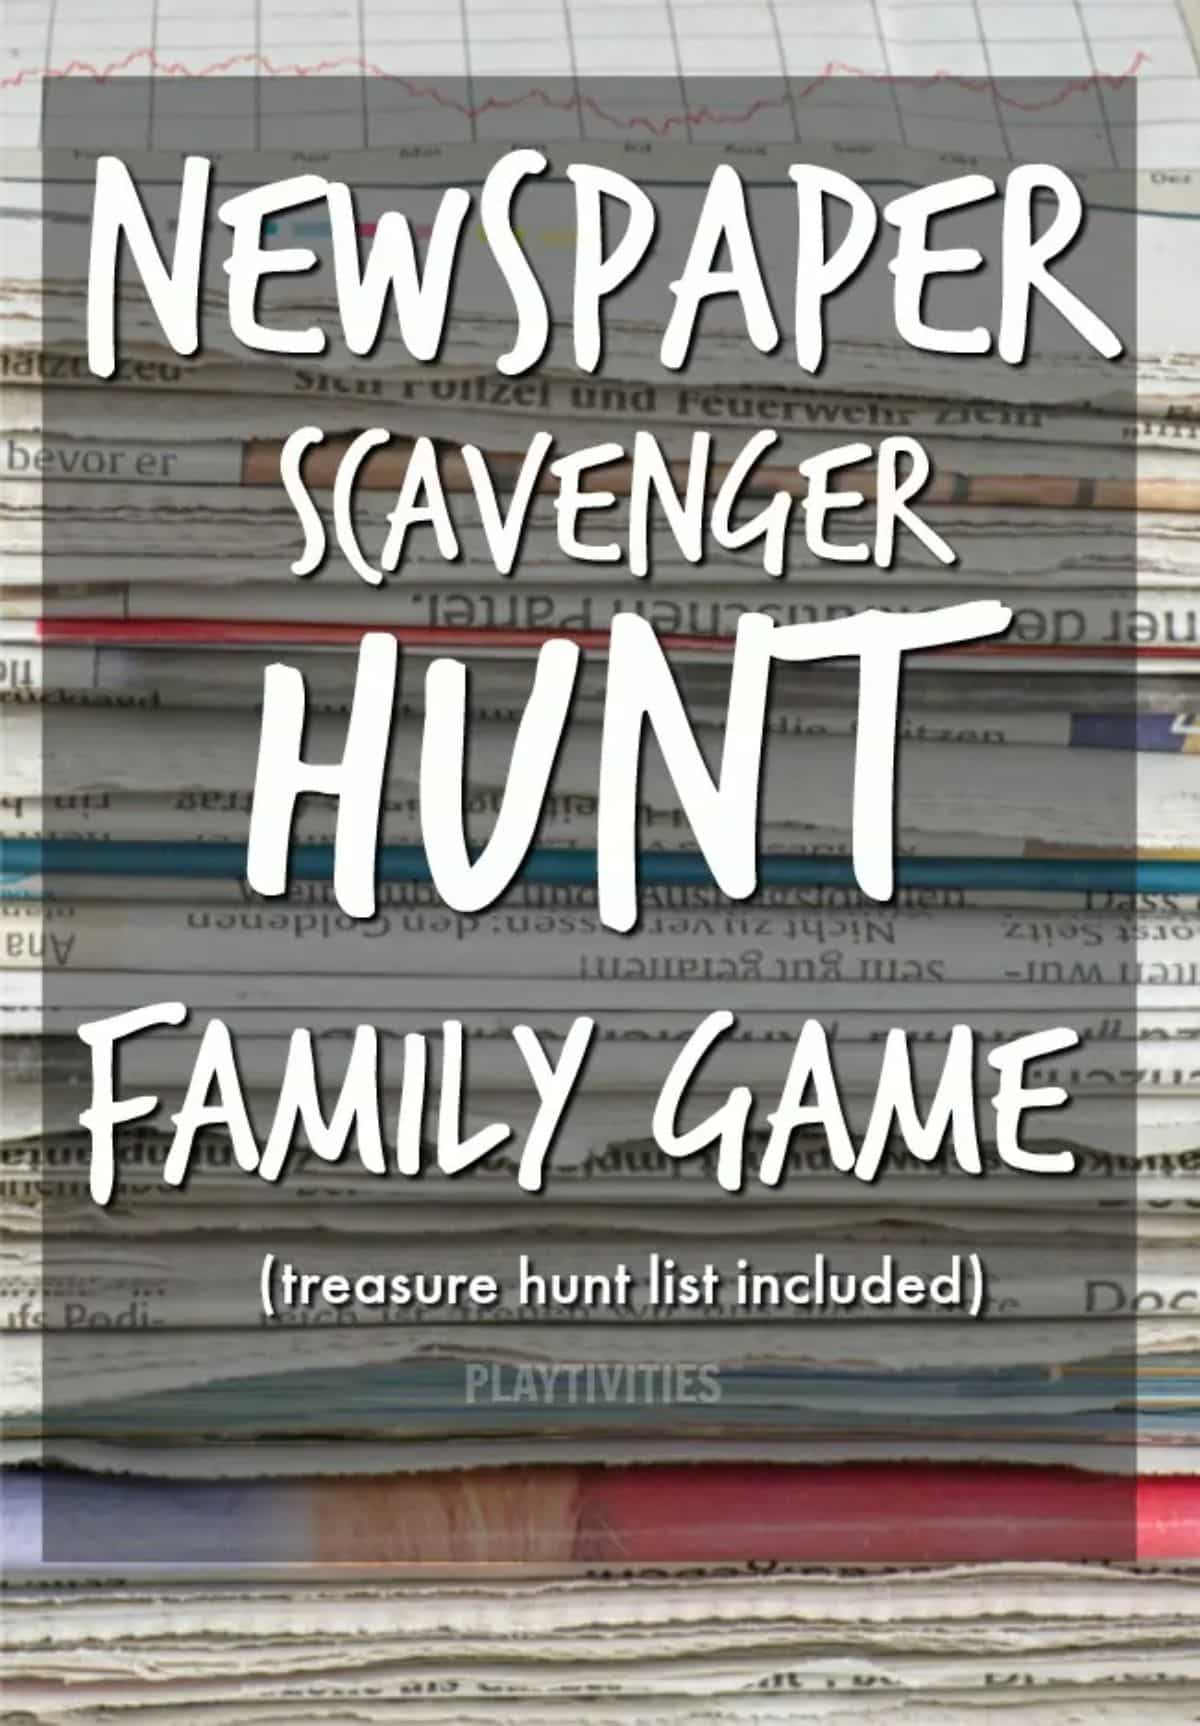 Newspaper scavenger hunt game poster.